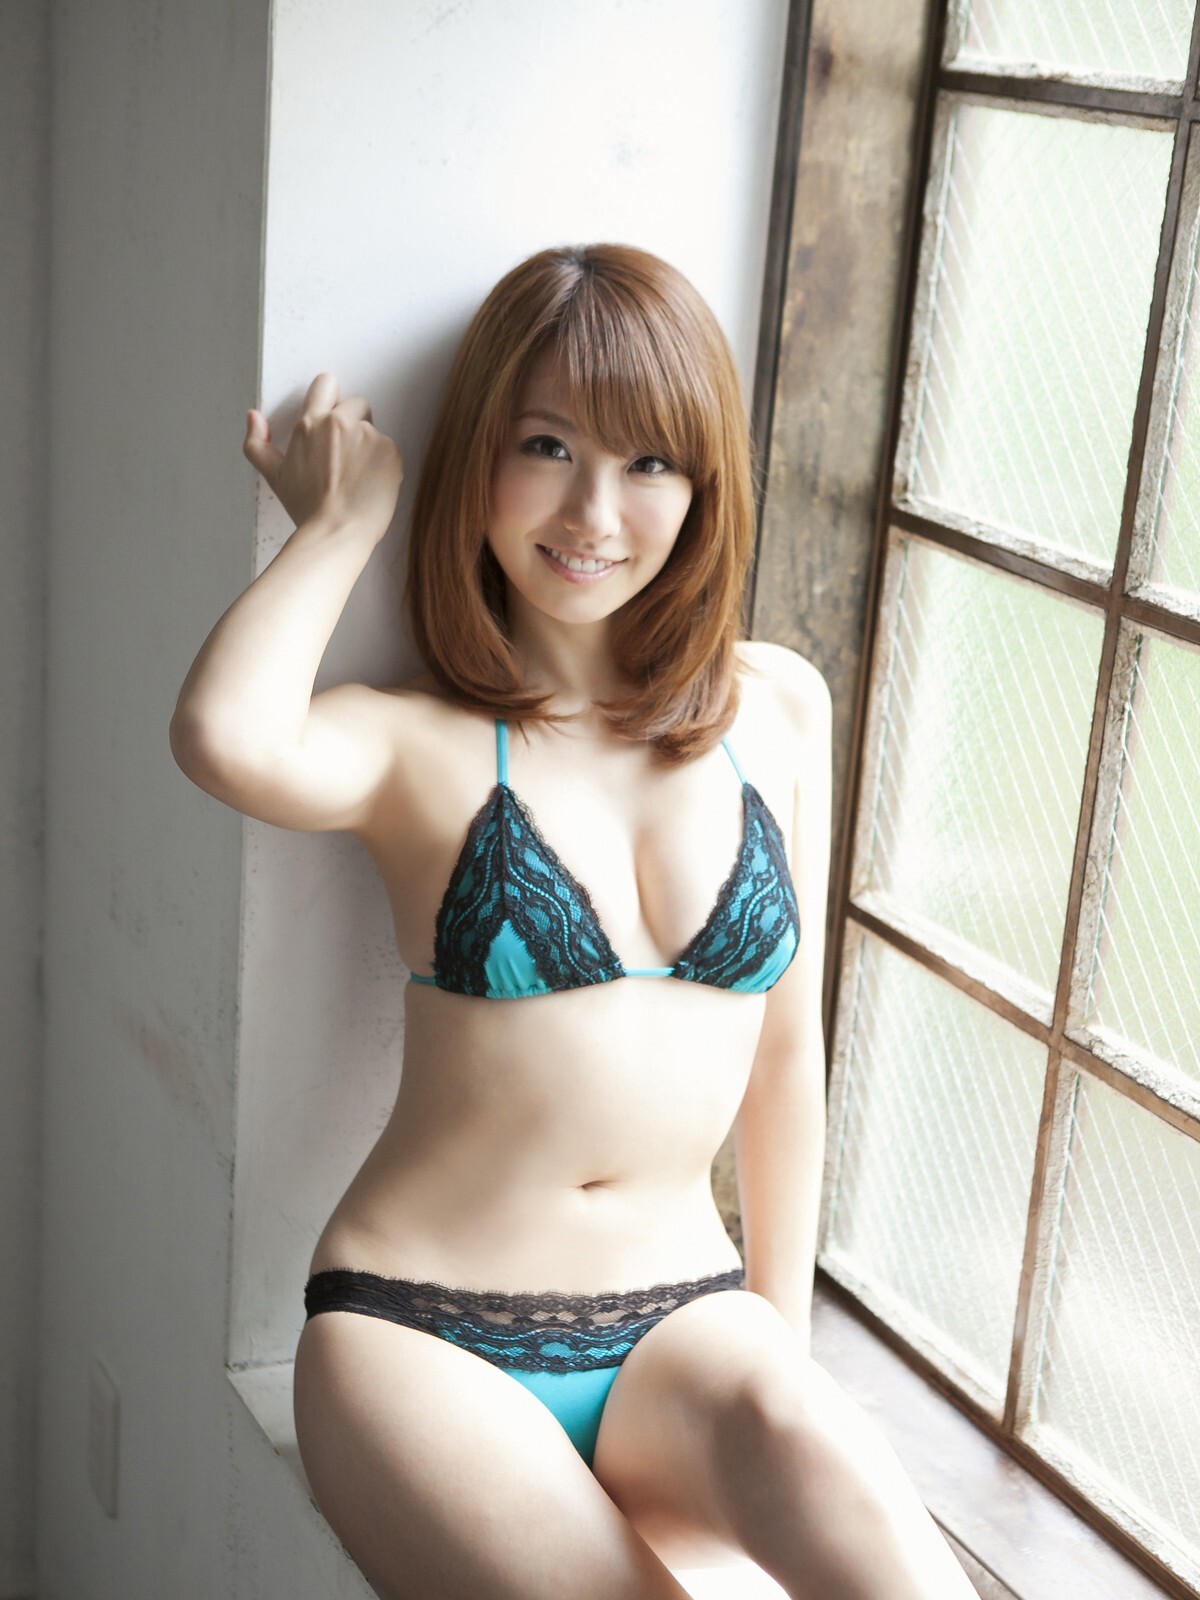 Yamamoto - Sexy frit[ Sabra.net ] CoverGirl